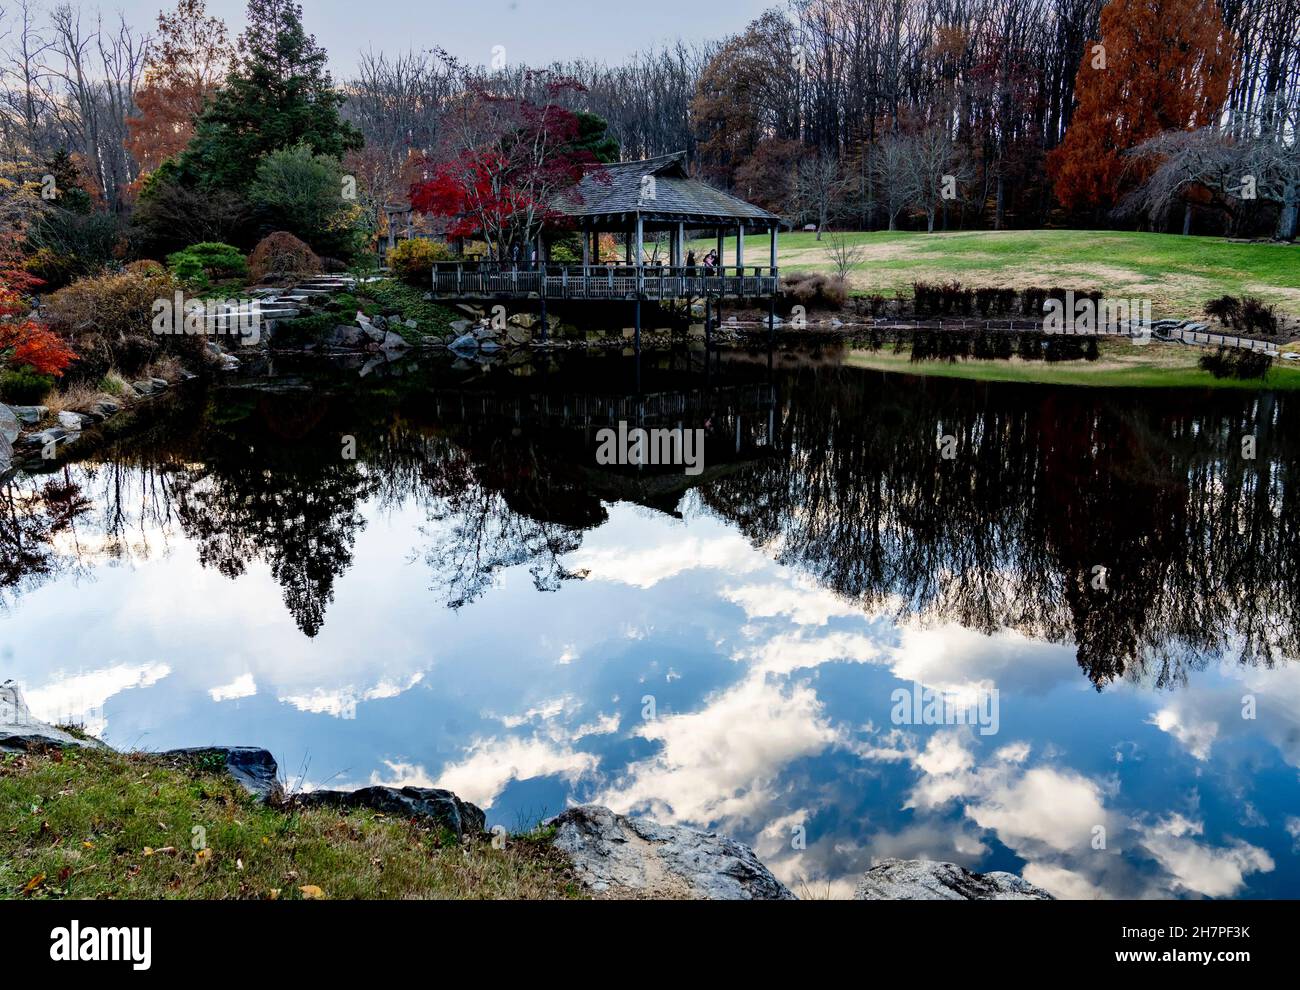 Die Wolkenbildung hallte im klaren Wasser eines Parks. Stockfoto